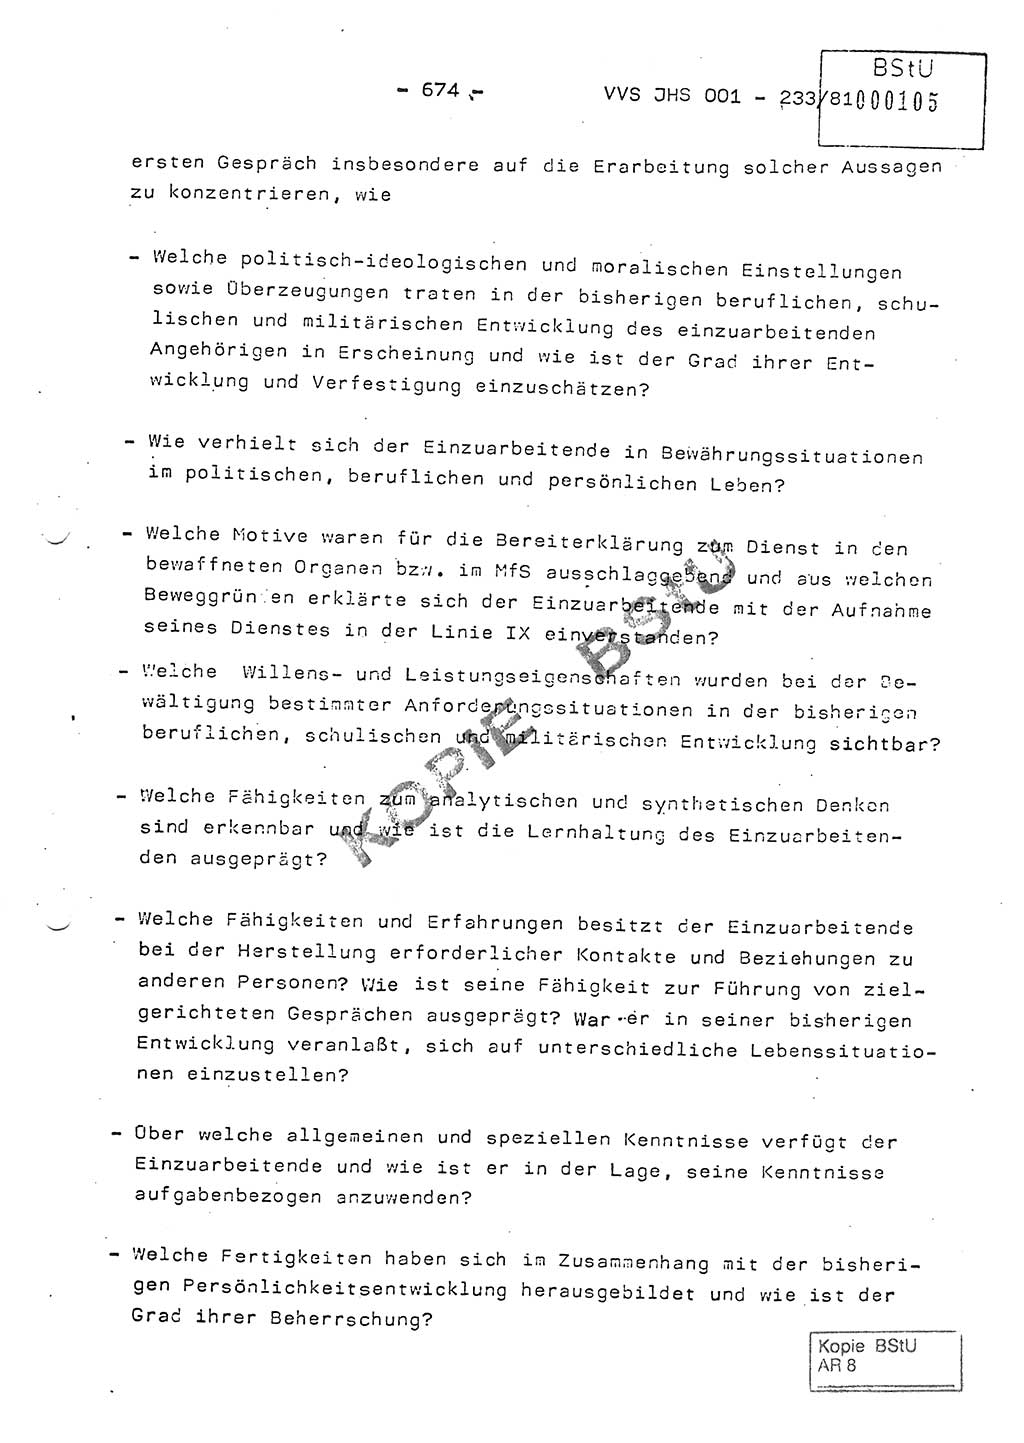 Dissertation Oberstleutnant Horst Zank (JHS), Oberstleutnant Dr. Karl-Heinz Knoblauch (JHS), Oberstleutnant Gustav-Adolf Kowalewski (HA Ⅸ), Oberstleutnant Wolfgang Plötner (HA Ⅸ), Ministerium für Staatssicherheit (MfS) [Deutsche Demokratische Republik (DDR)], Juristische Hochschule (JHS), Vertrauliche Verschlußsache (VVS) o001-233/81, Potsdam 1981, Blatt 674 (Diss. MfS DDR JHS VVS o001-233/81 1981, Bl. 674)